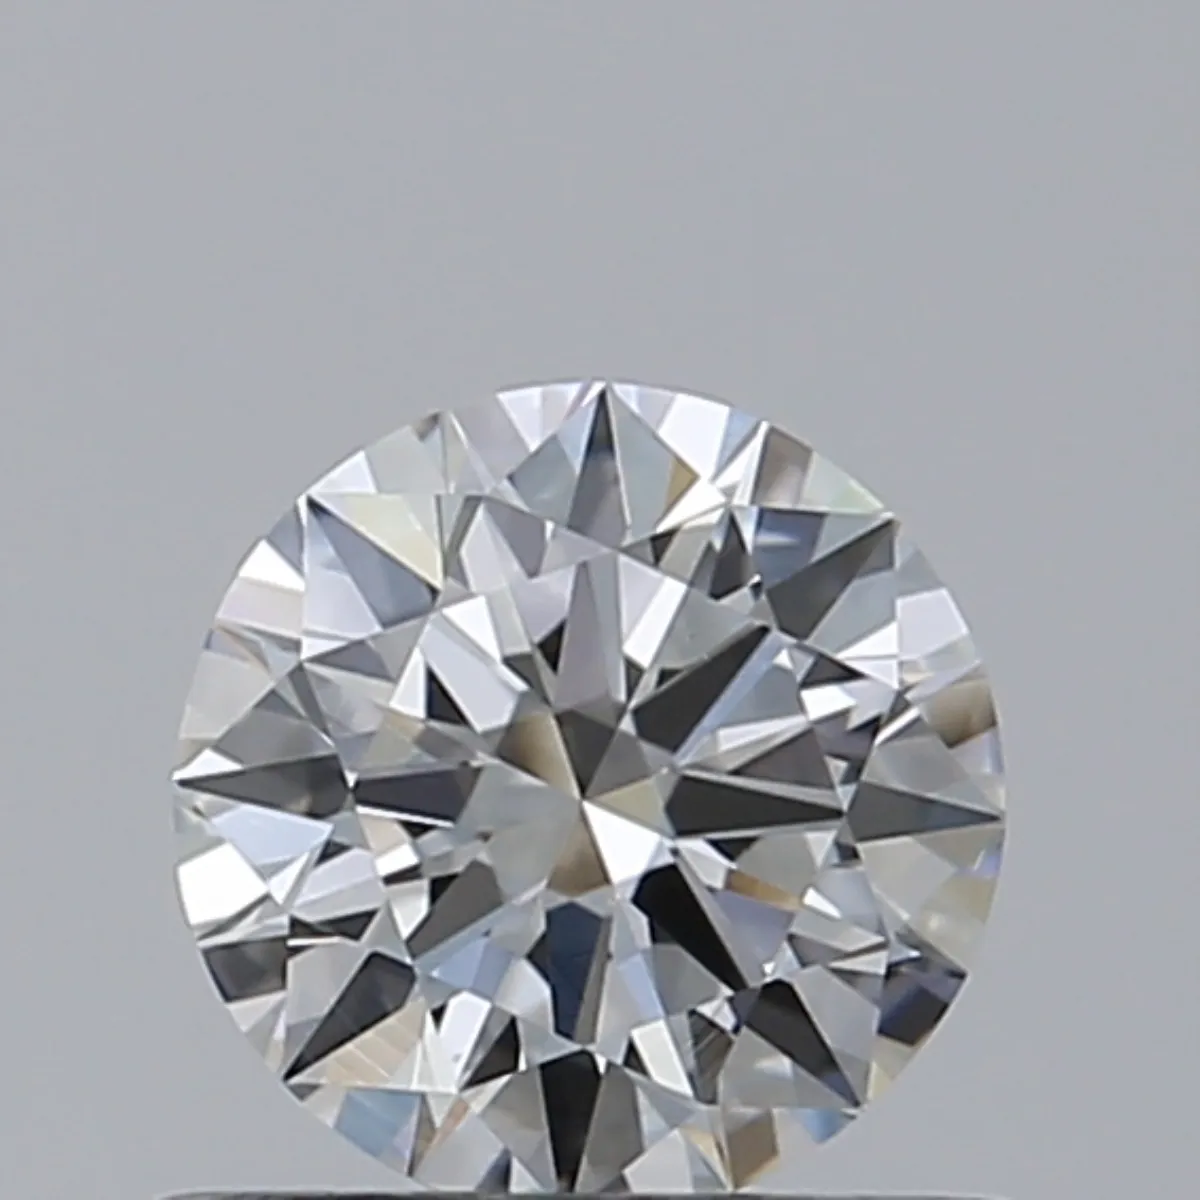 Laboratuvar elmas VS1 netlik toptan gerçek büyük boy 0.50 karat mükemmel yuvarlak kesim gevşek beyaz F renk CVD yuvarlak elmas satış